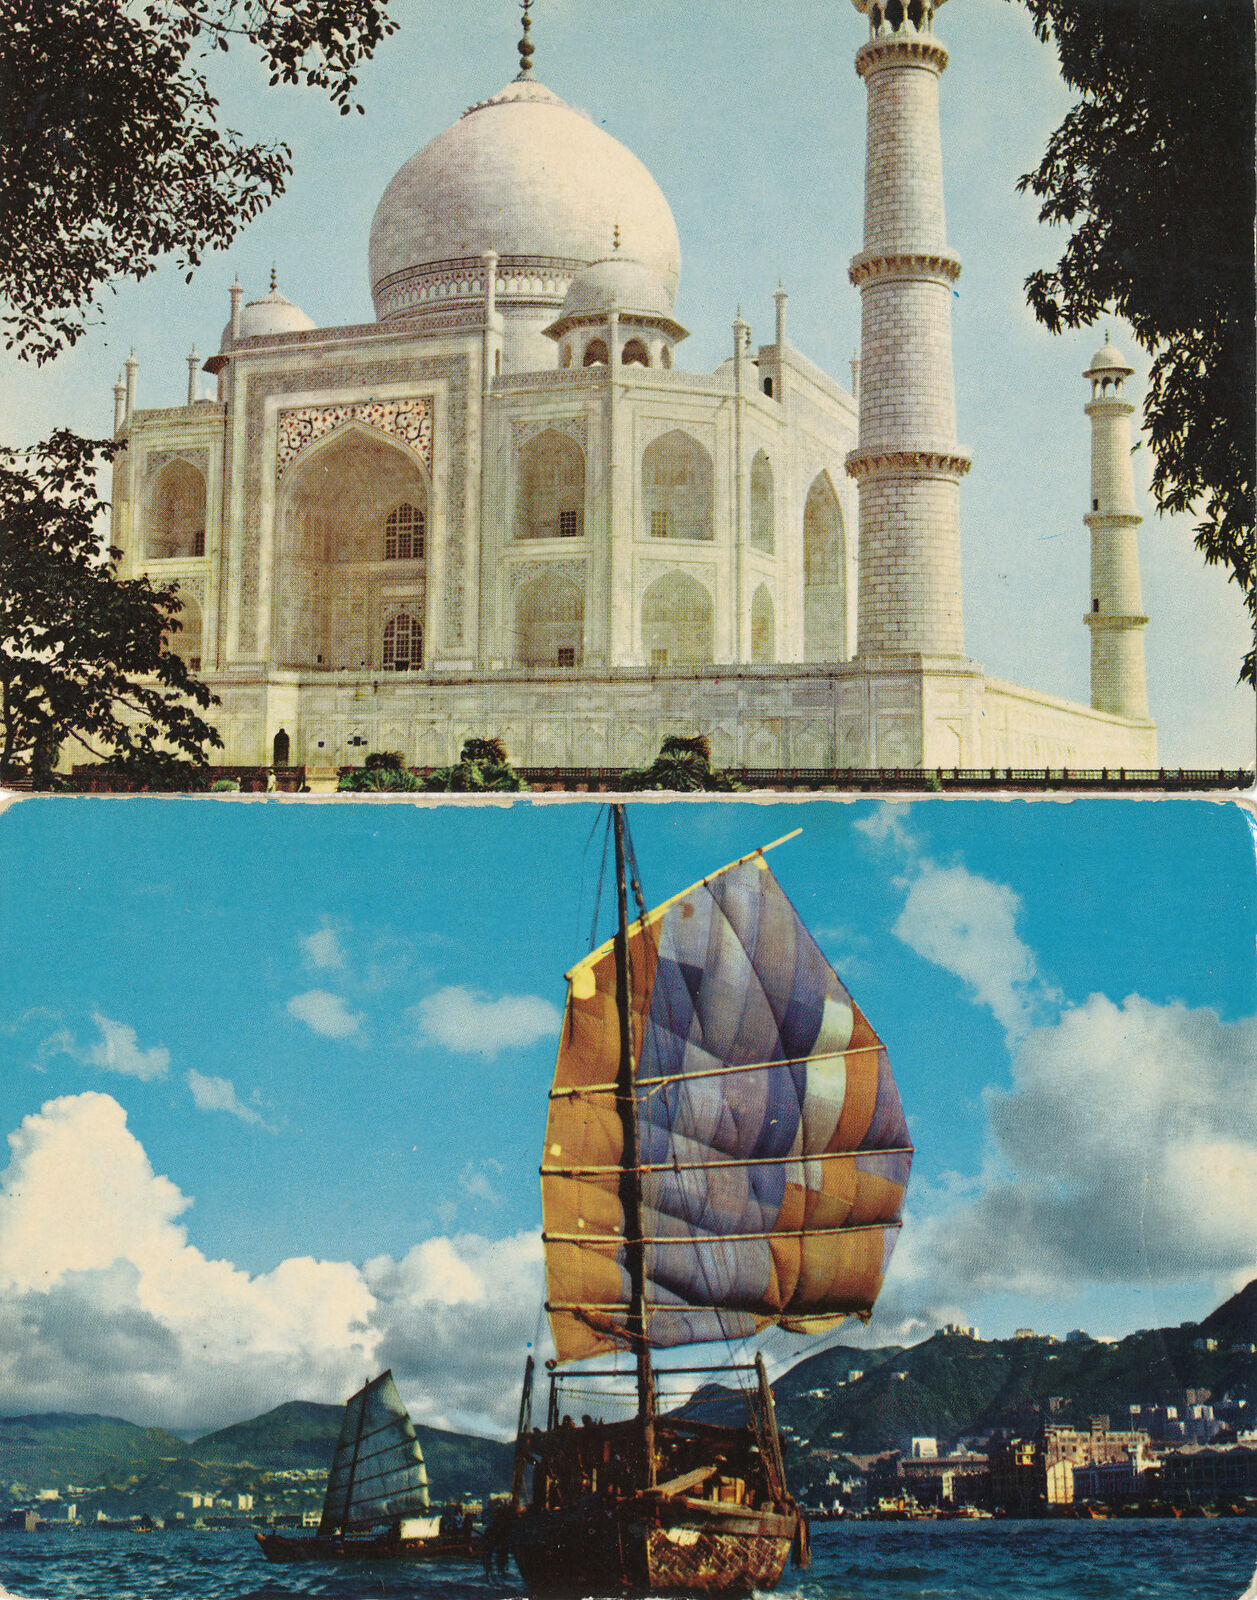 Pan AM Airlines - 2 postcards - Hong Kong and India views